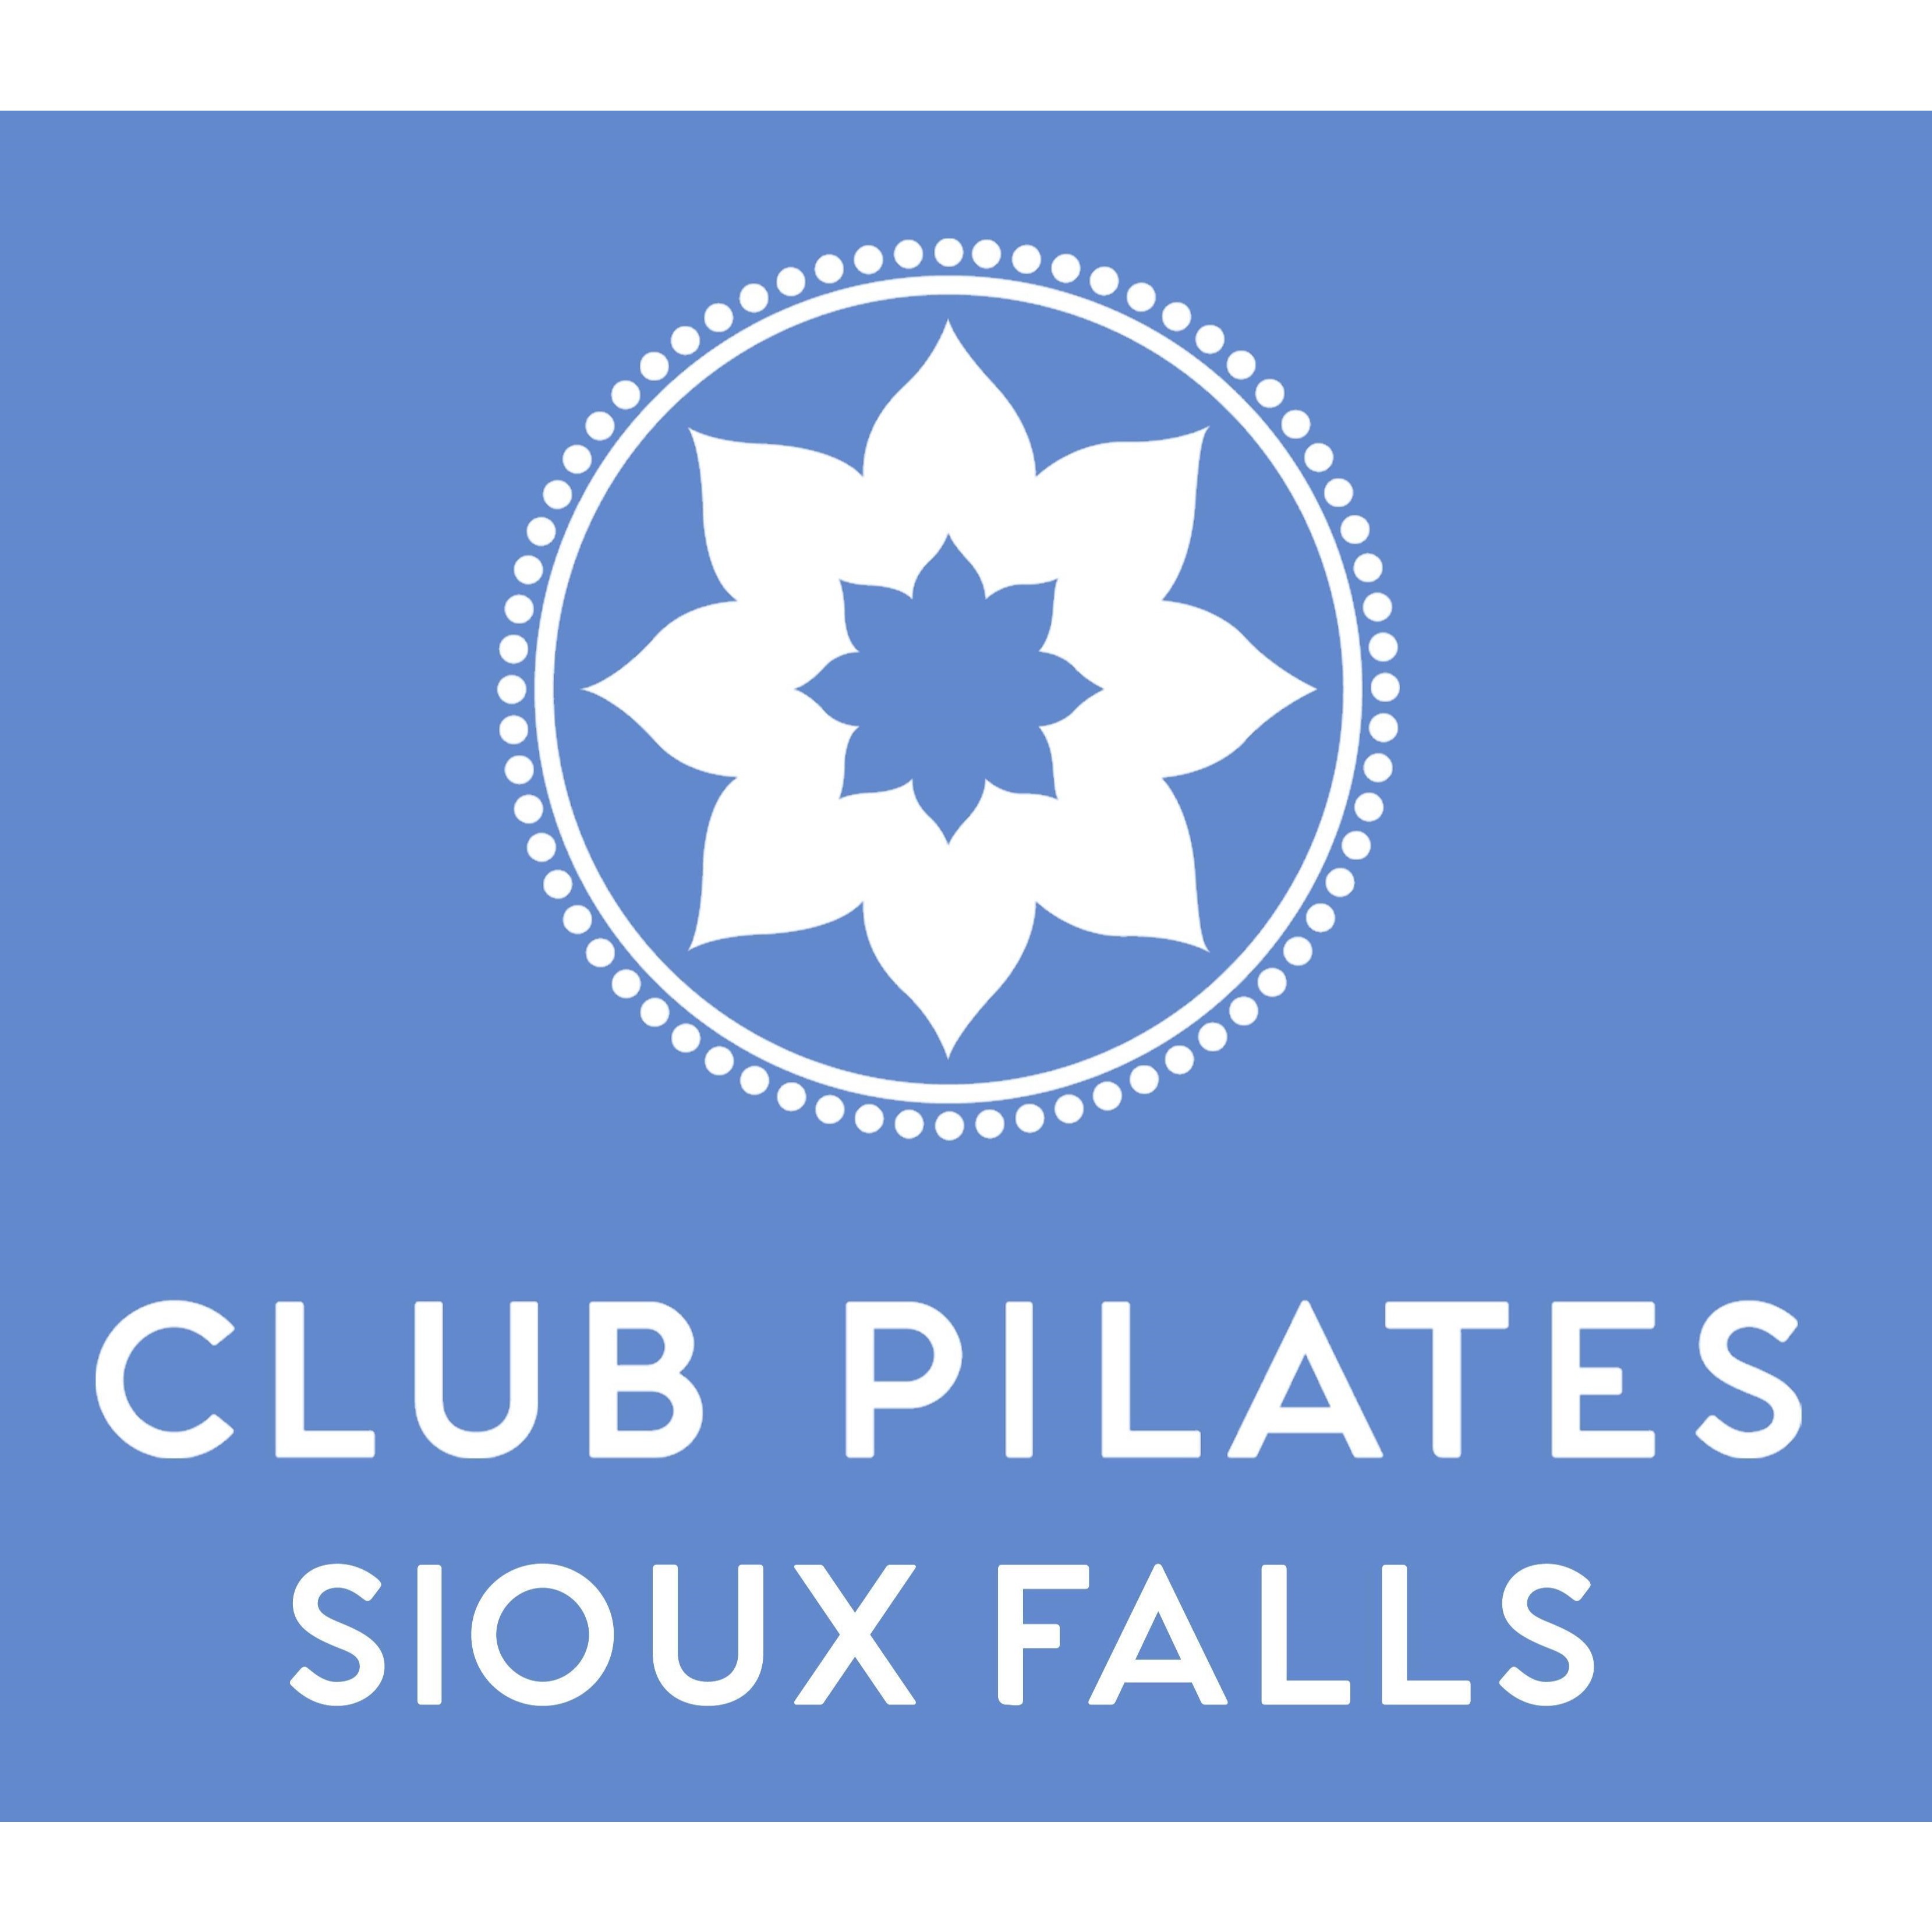 Club Pilates - Sioux Falls, SD 57108 - (605)681-6556 | ShowMeLocal.com